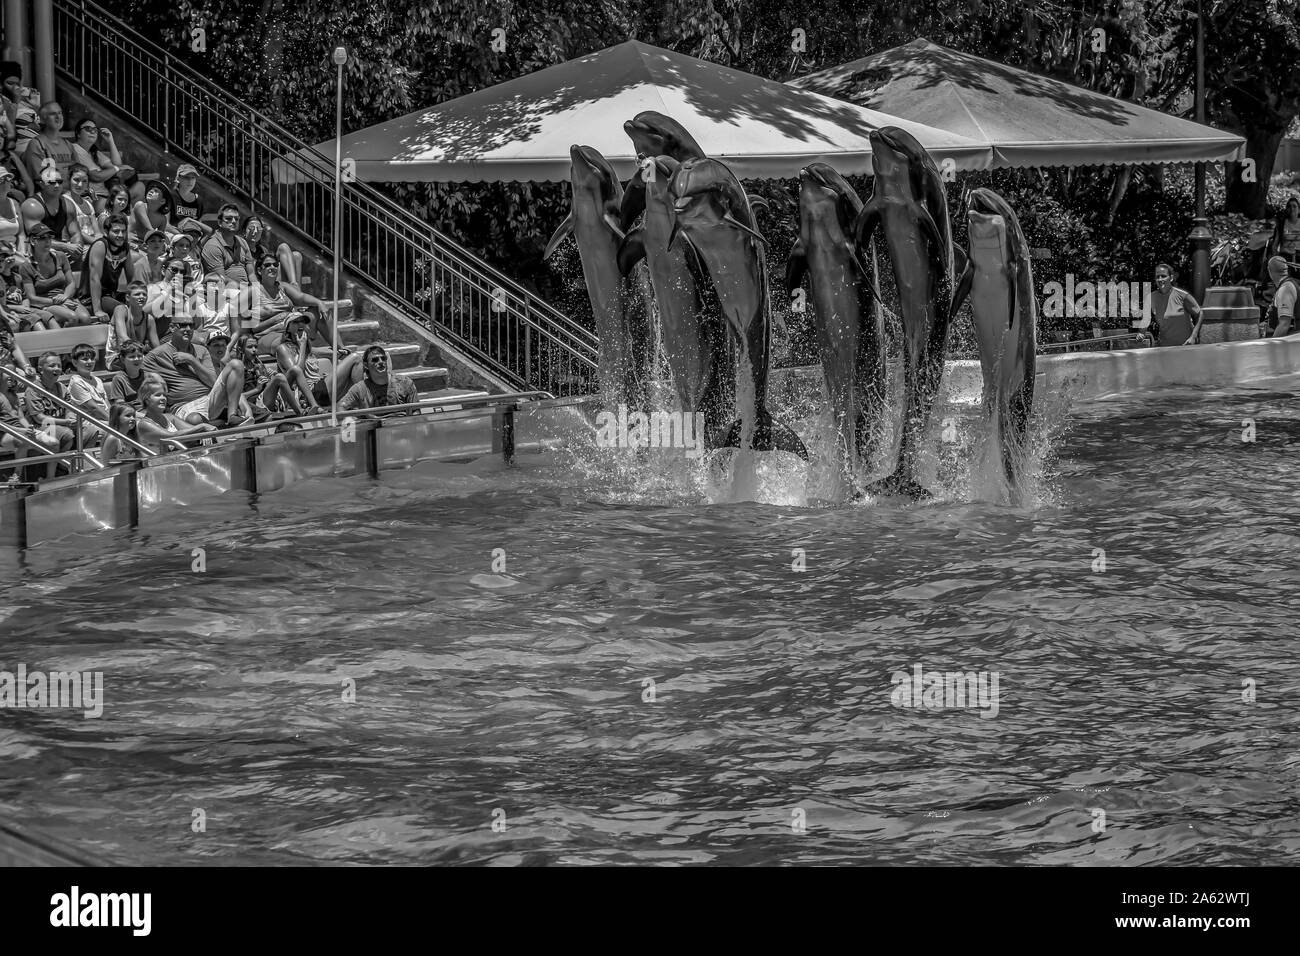 Orlando, Florida. Juli 29, 2019. Wunderschöne Aussicht auf Delphine springen in Dolphin Tage show in Seaworld (2) Stockfoto